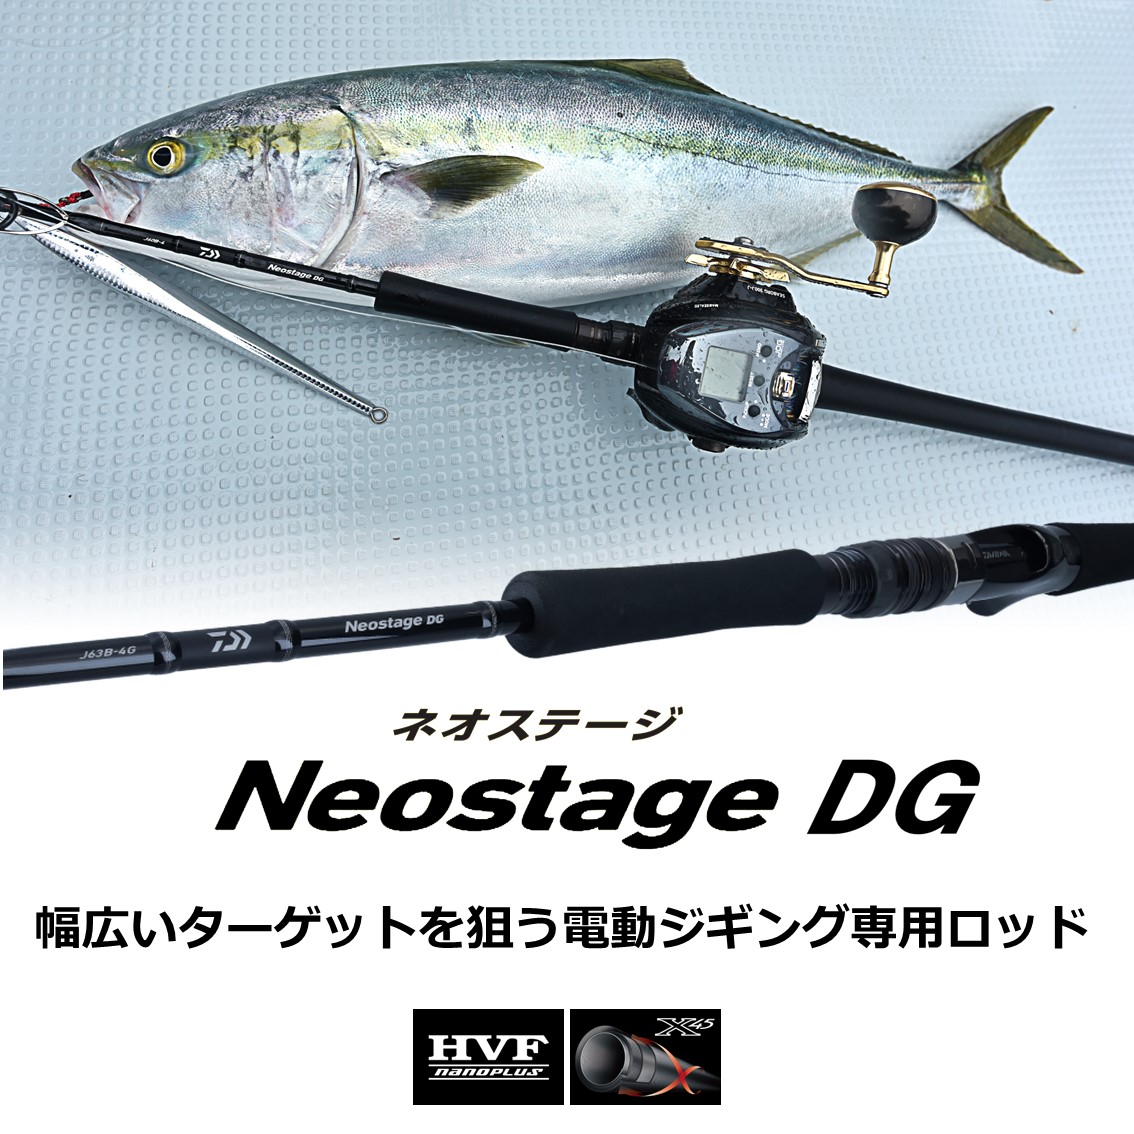 ダイワ ネオステージDG J63B-4G (ジギングロッド) - 釣り具の販売